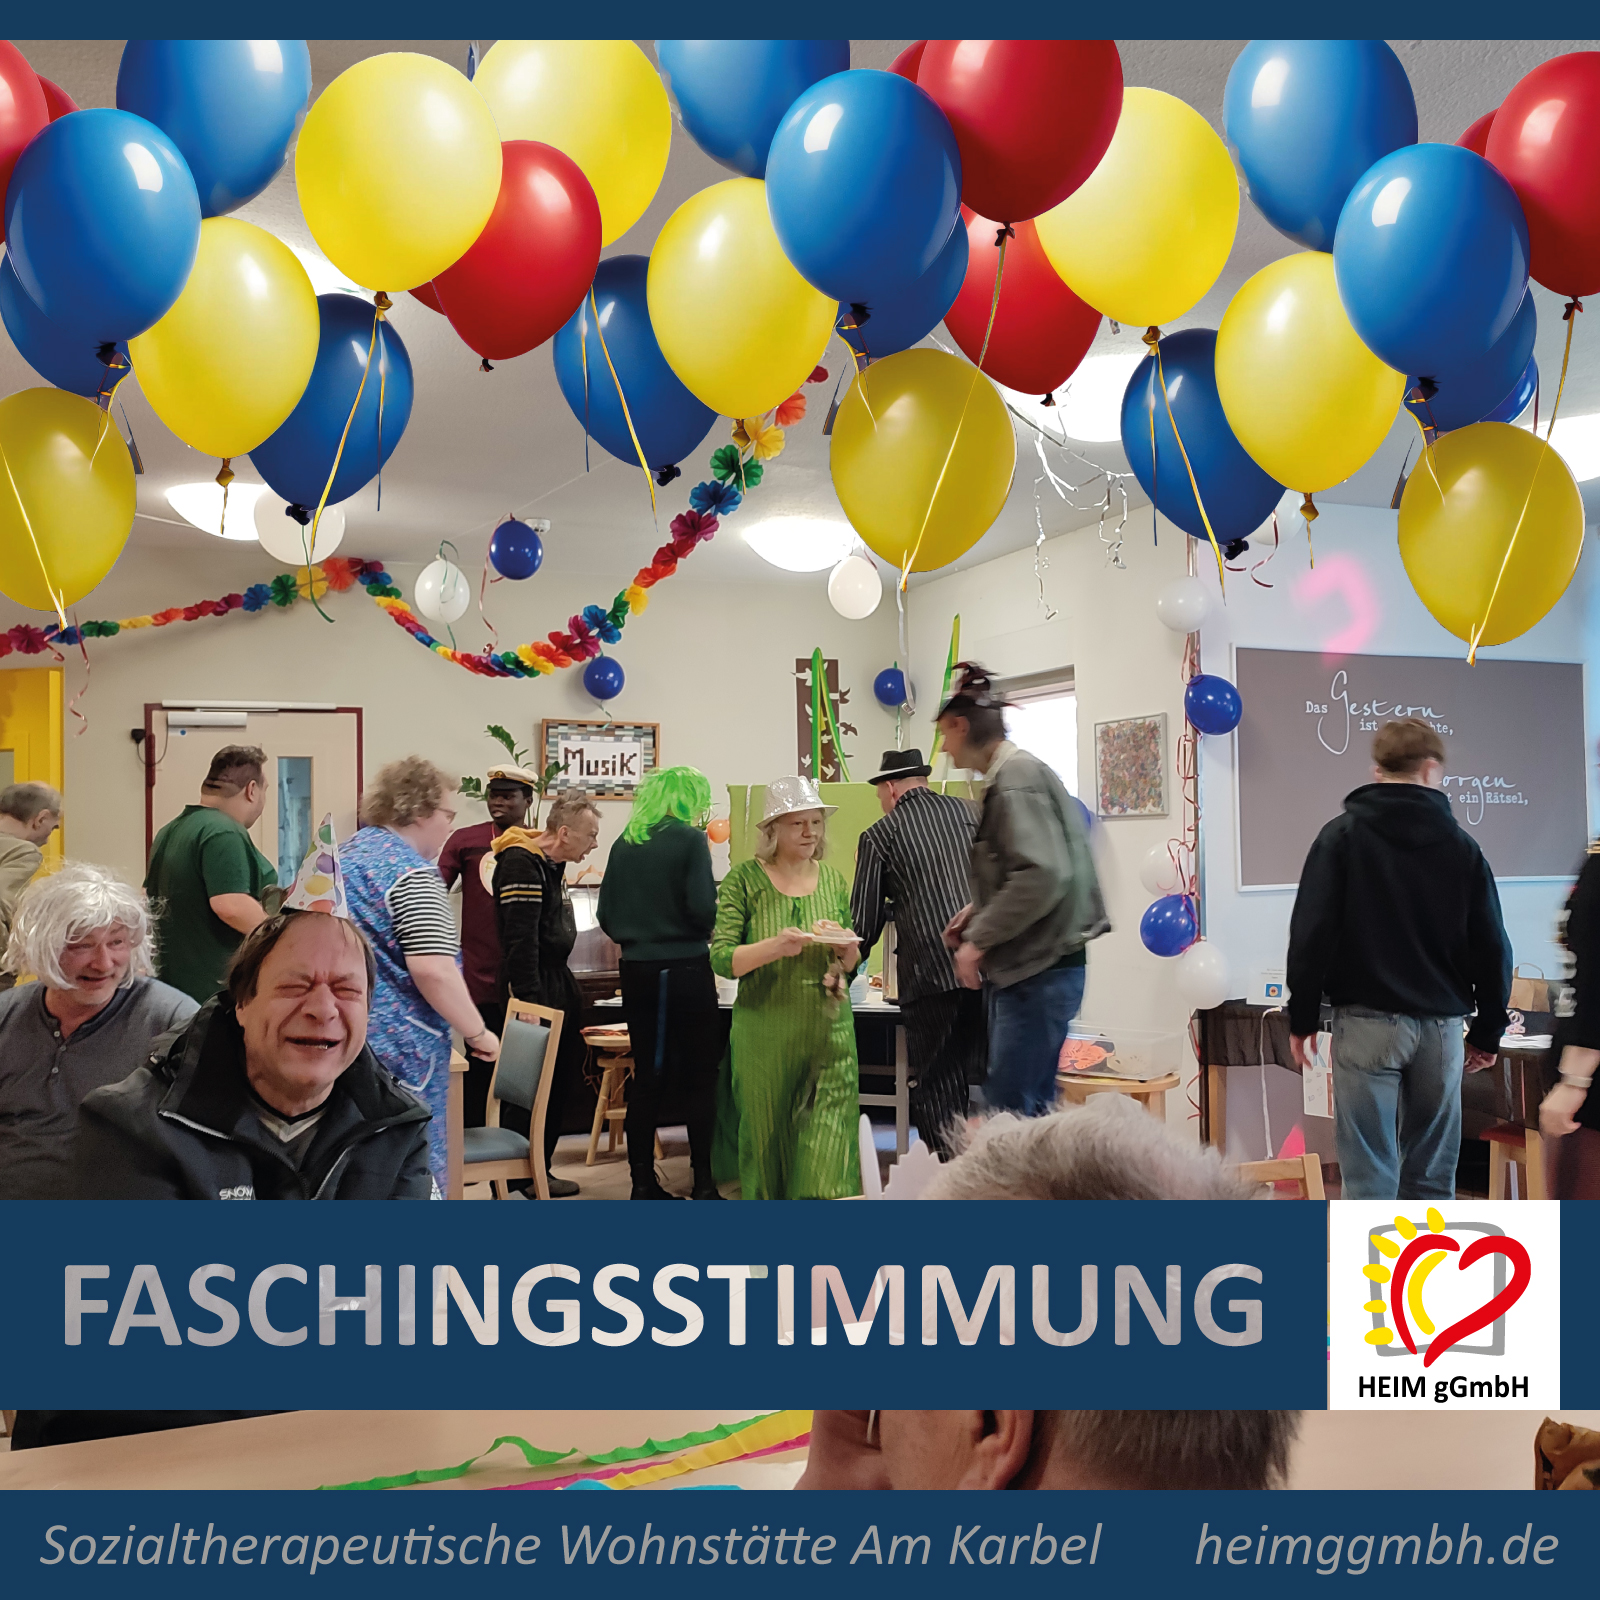 Fasching wurde auch in der Sozialtherapeutischen Wohnstätte Am Karbel der HEIM gemeinnützigen GmbH aus Chemnitz gefeiert.